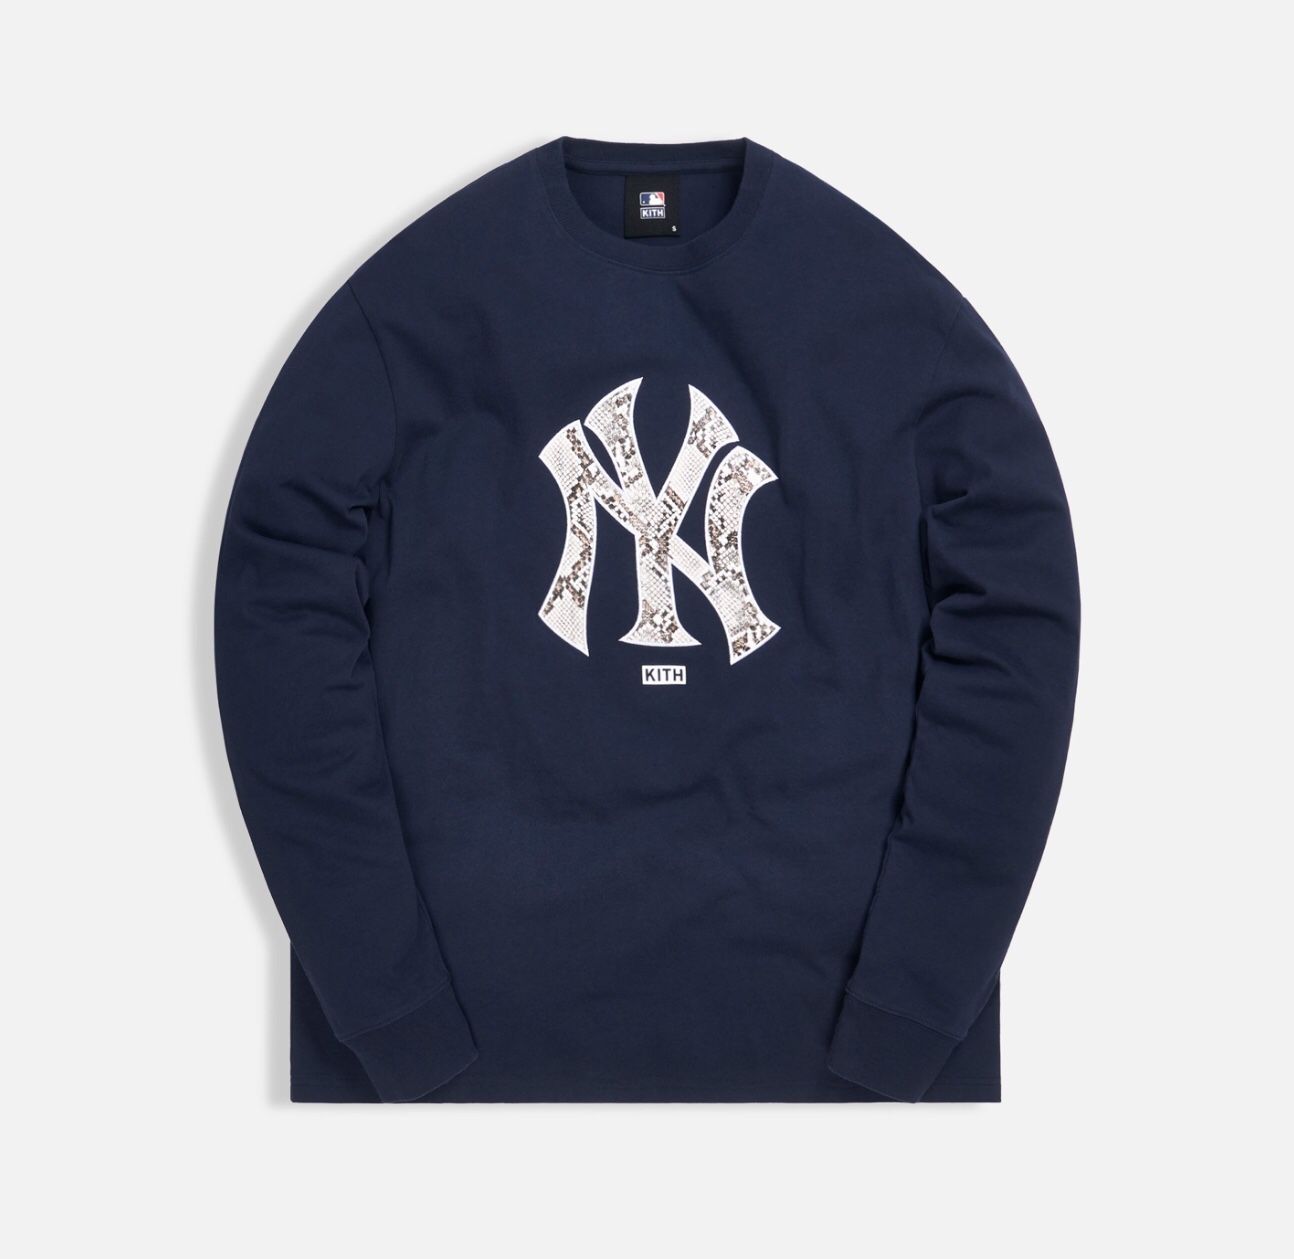 Kith MLB Major League Baseball NY New York Yankees L/S Long Sleeve Tee Navy Size Small Snakeskin Logo